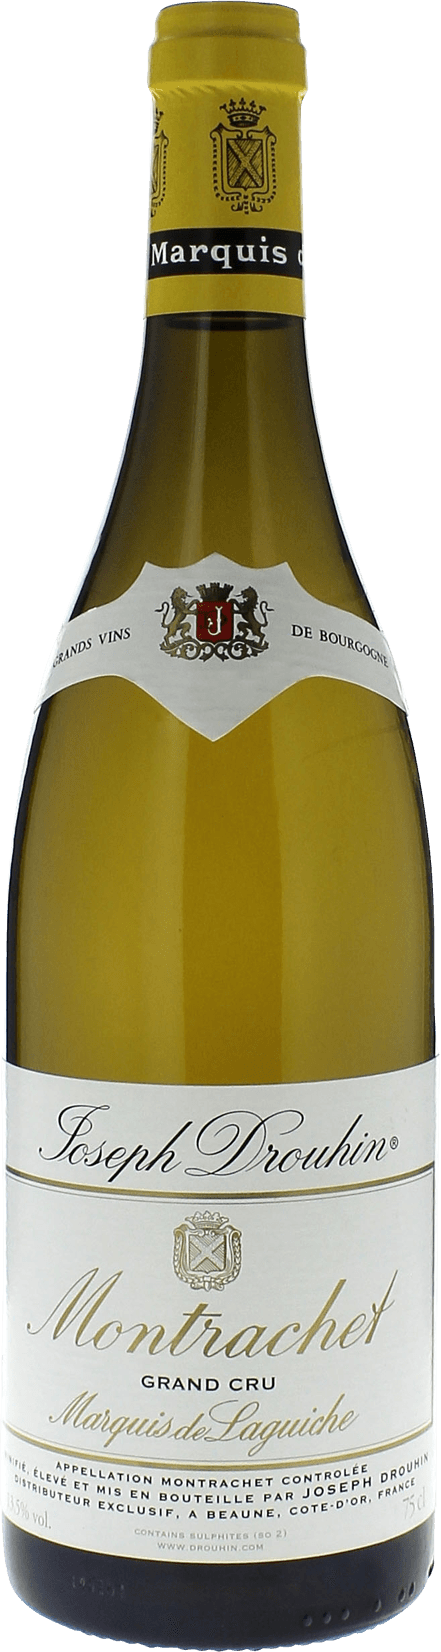 Montrachet marquis de laguiche 1997 Domaine DROUHIN, Bourgogne blanc